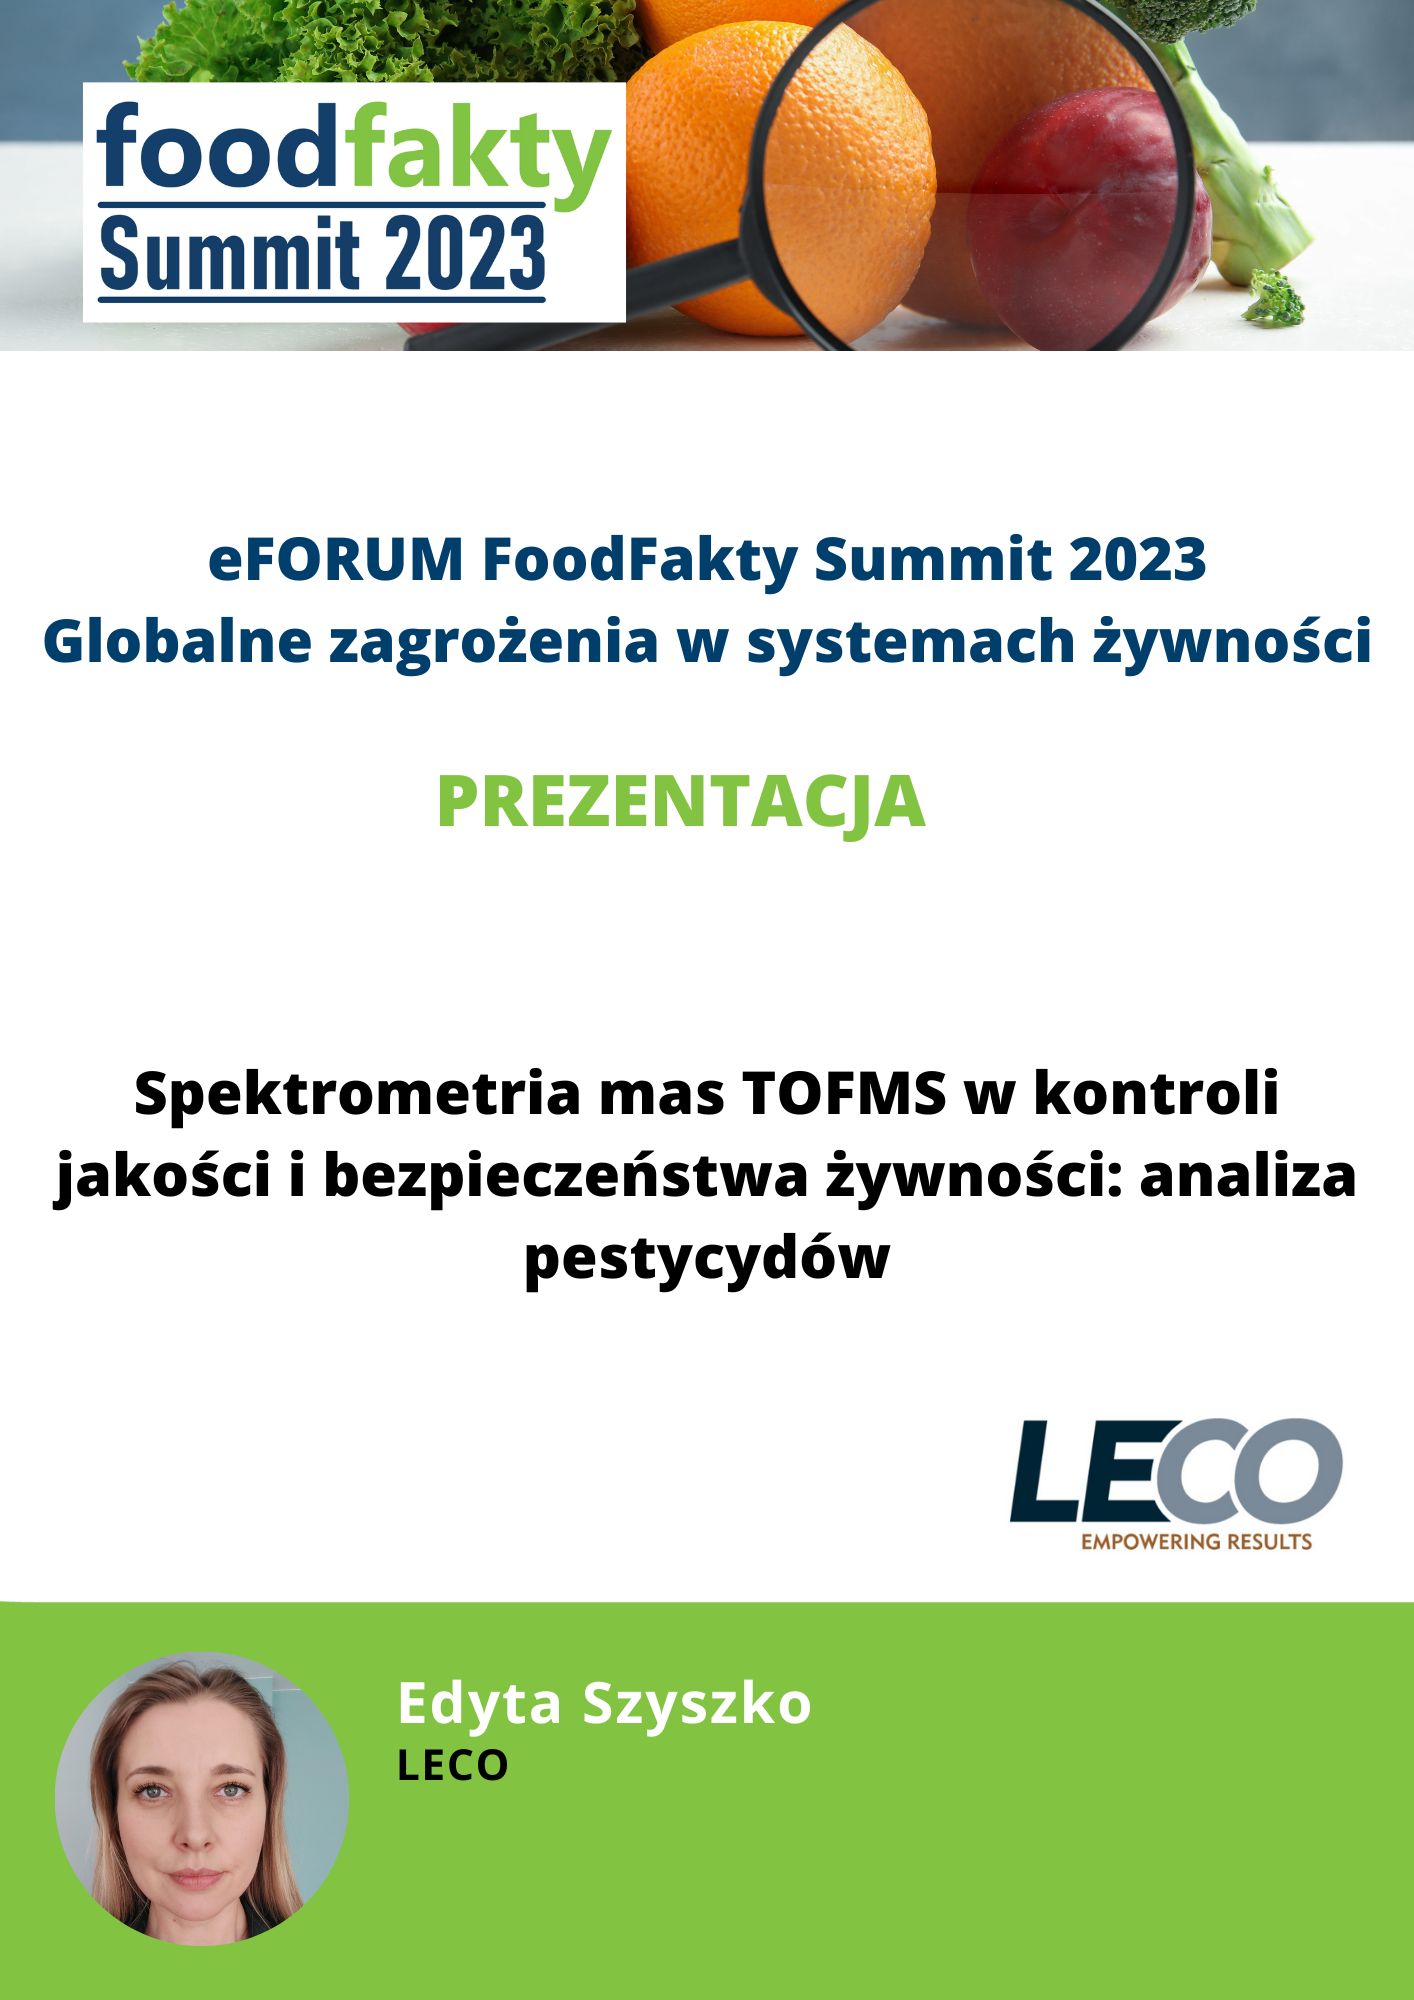 FoodFakty Summit Globalne i rosnące zagrożenia w systemach żywności - prezentacja LECO